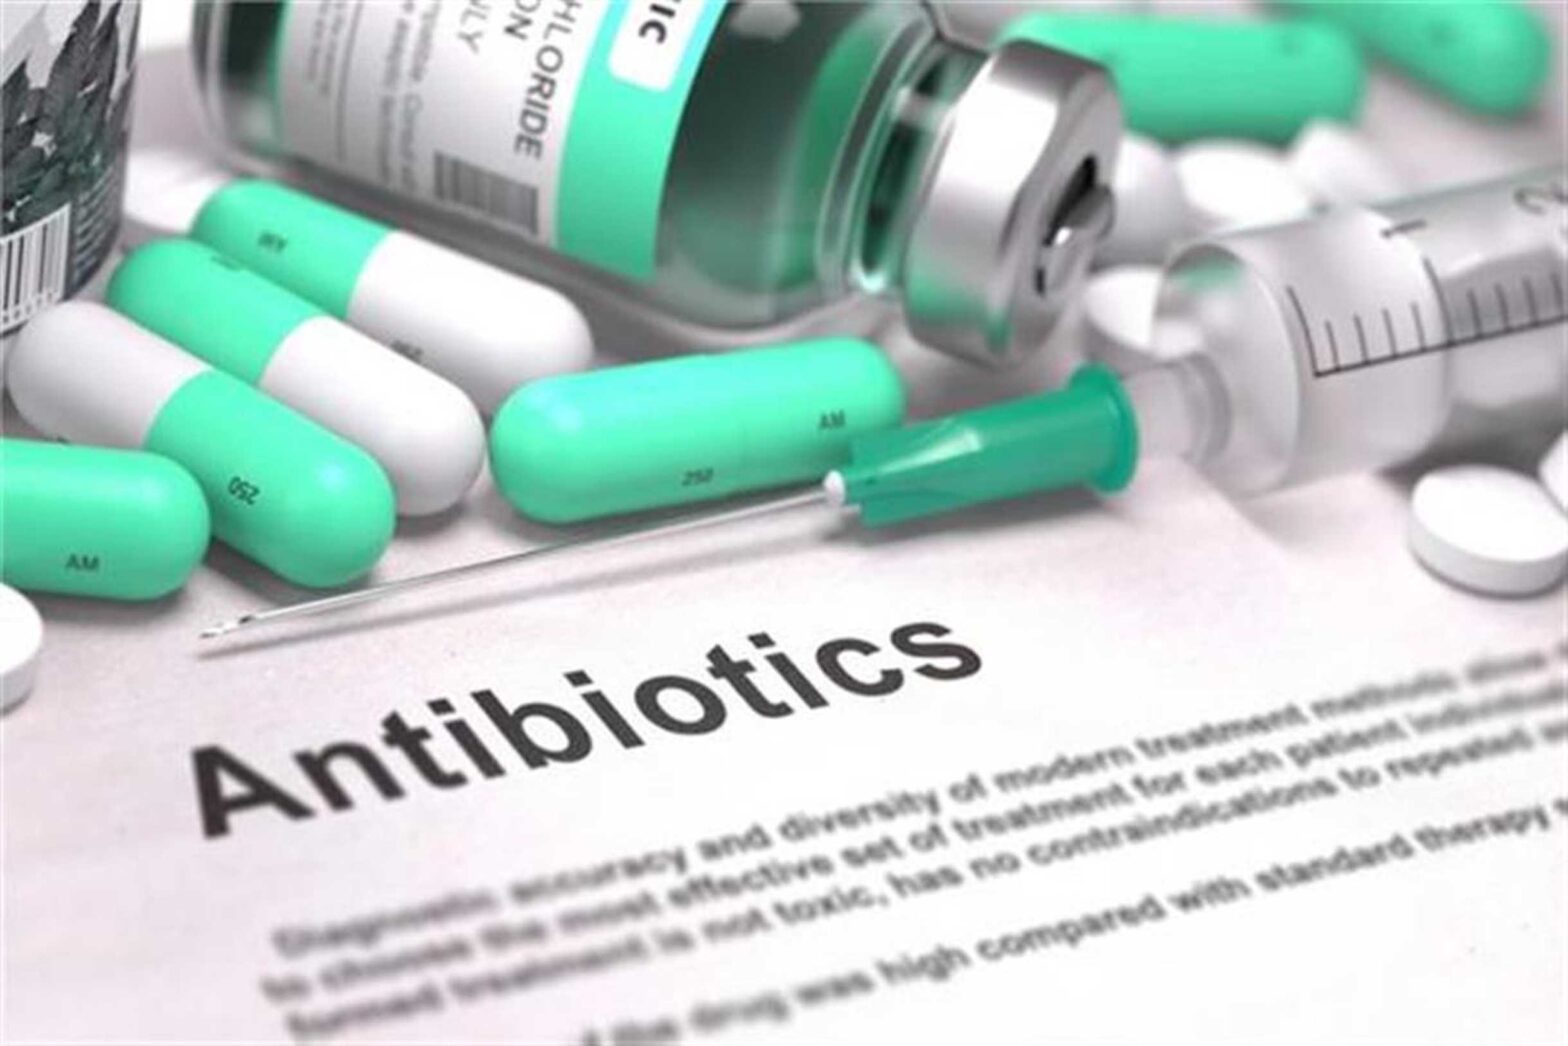 المضادات الحيوية ..ما هى المضادات الحيوية؟ أنواع المضادات الحيوية..كيفية ومدة استخدامها